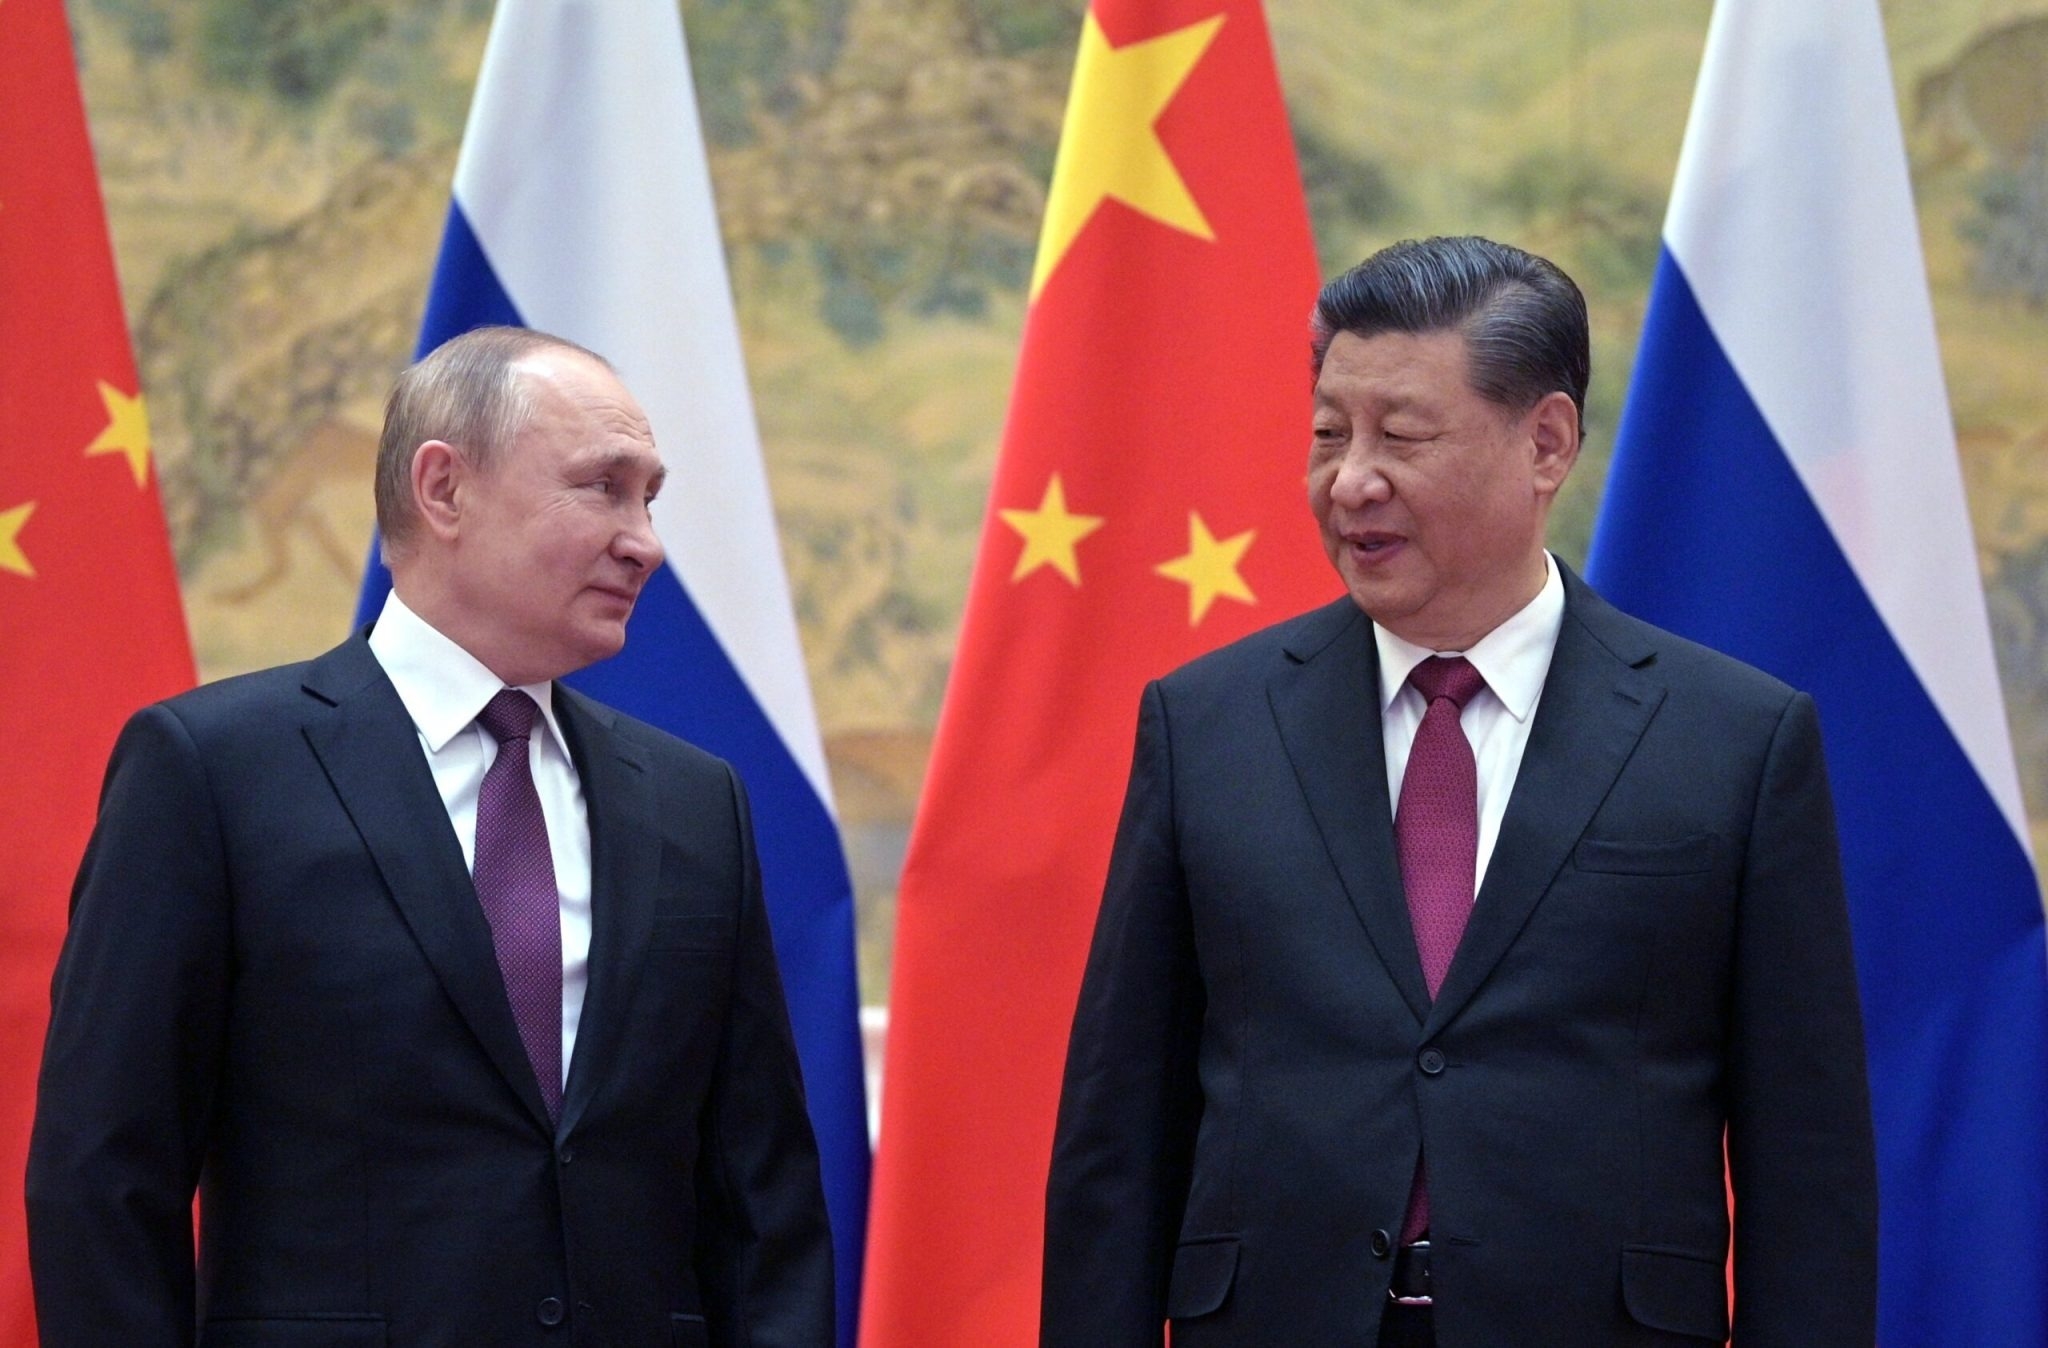 Лавров сообщил, что Путин и Си Цзиньпин планируют встретиться на саммитах ШОС и БРИКС